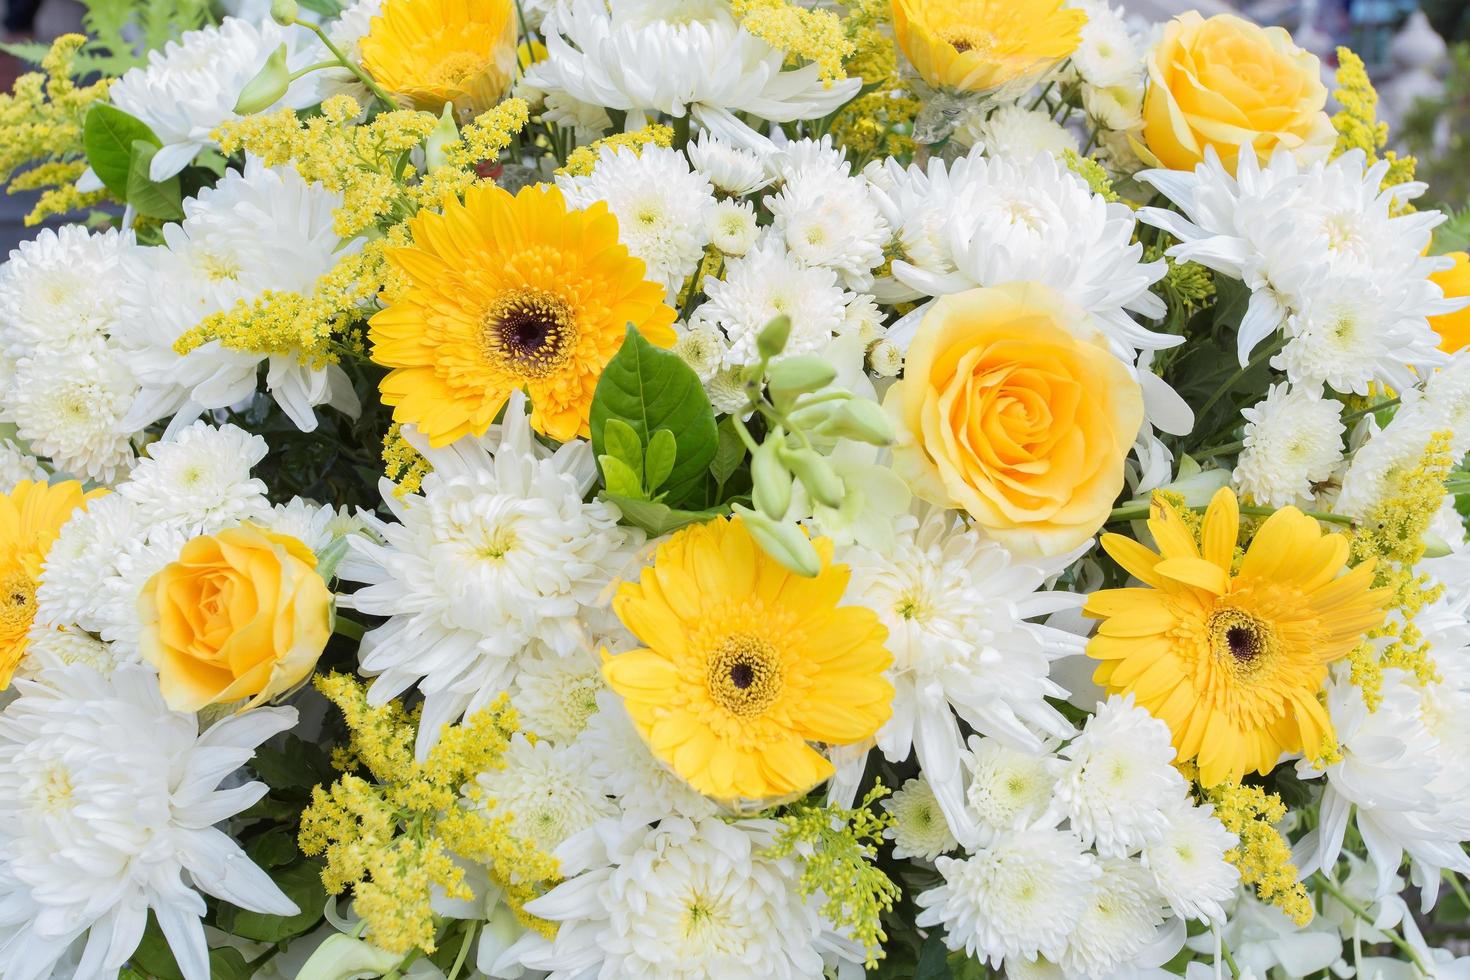 flores de crisântemo amarelo e branco, a rosa foi decorada com folhas verdes como guirlanda para usar no funeral. foto